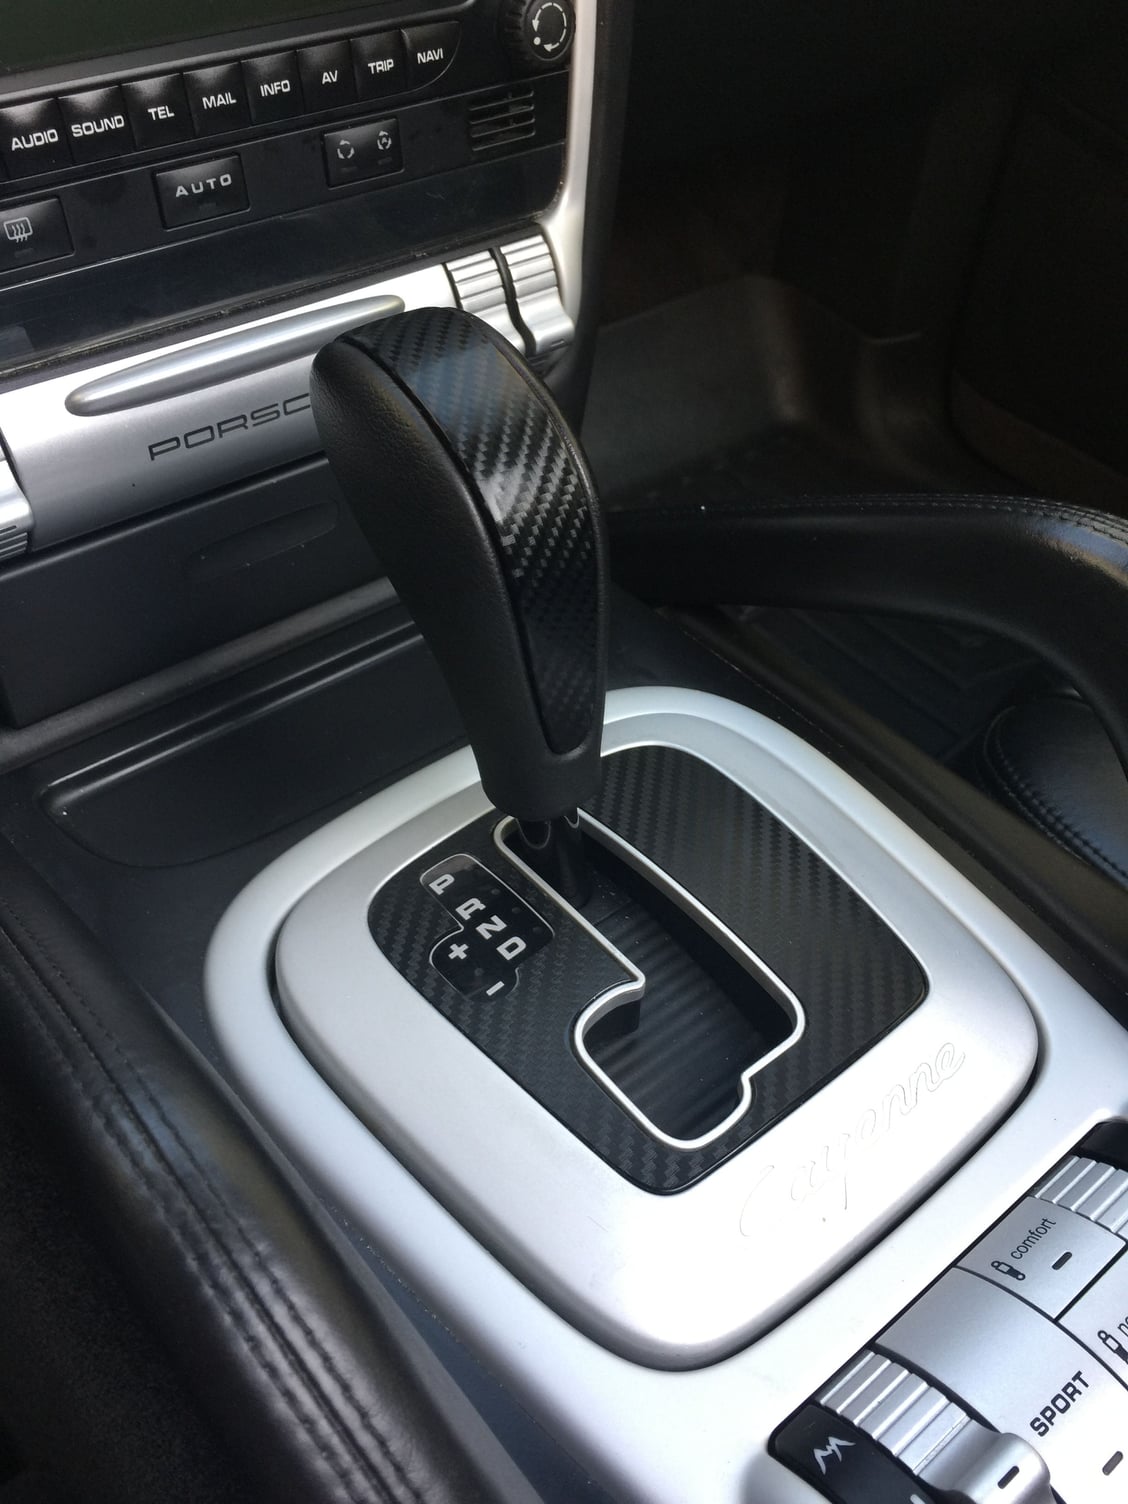 Shift knob aluminum trim removal 955/957 - Rennlist - Porsche Discussion  Forums